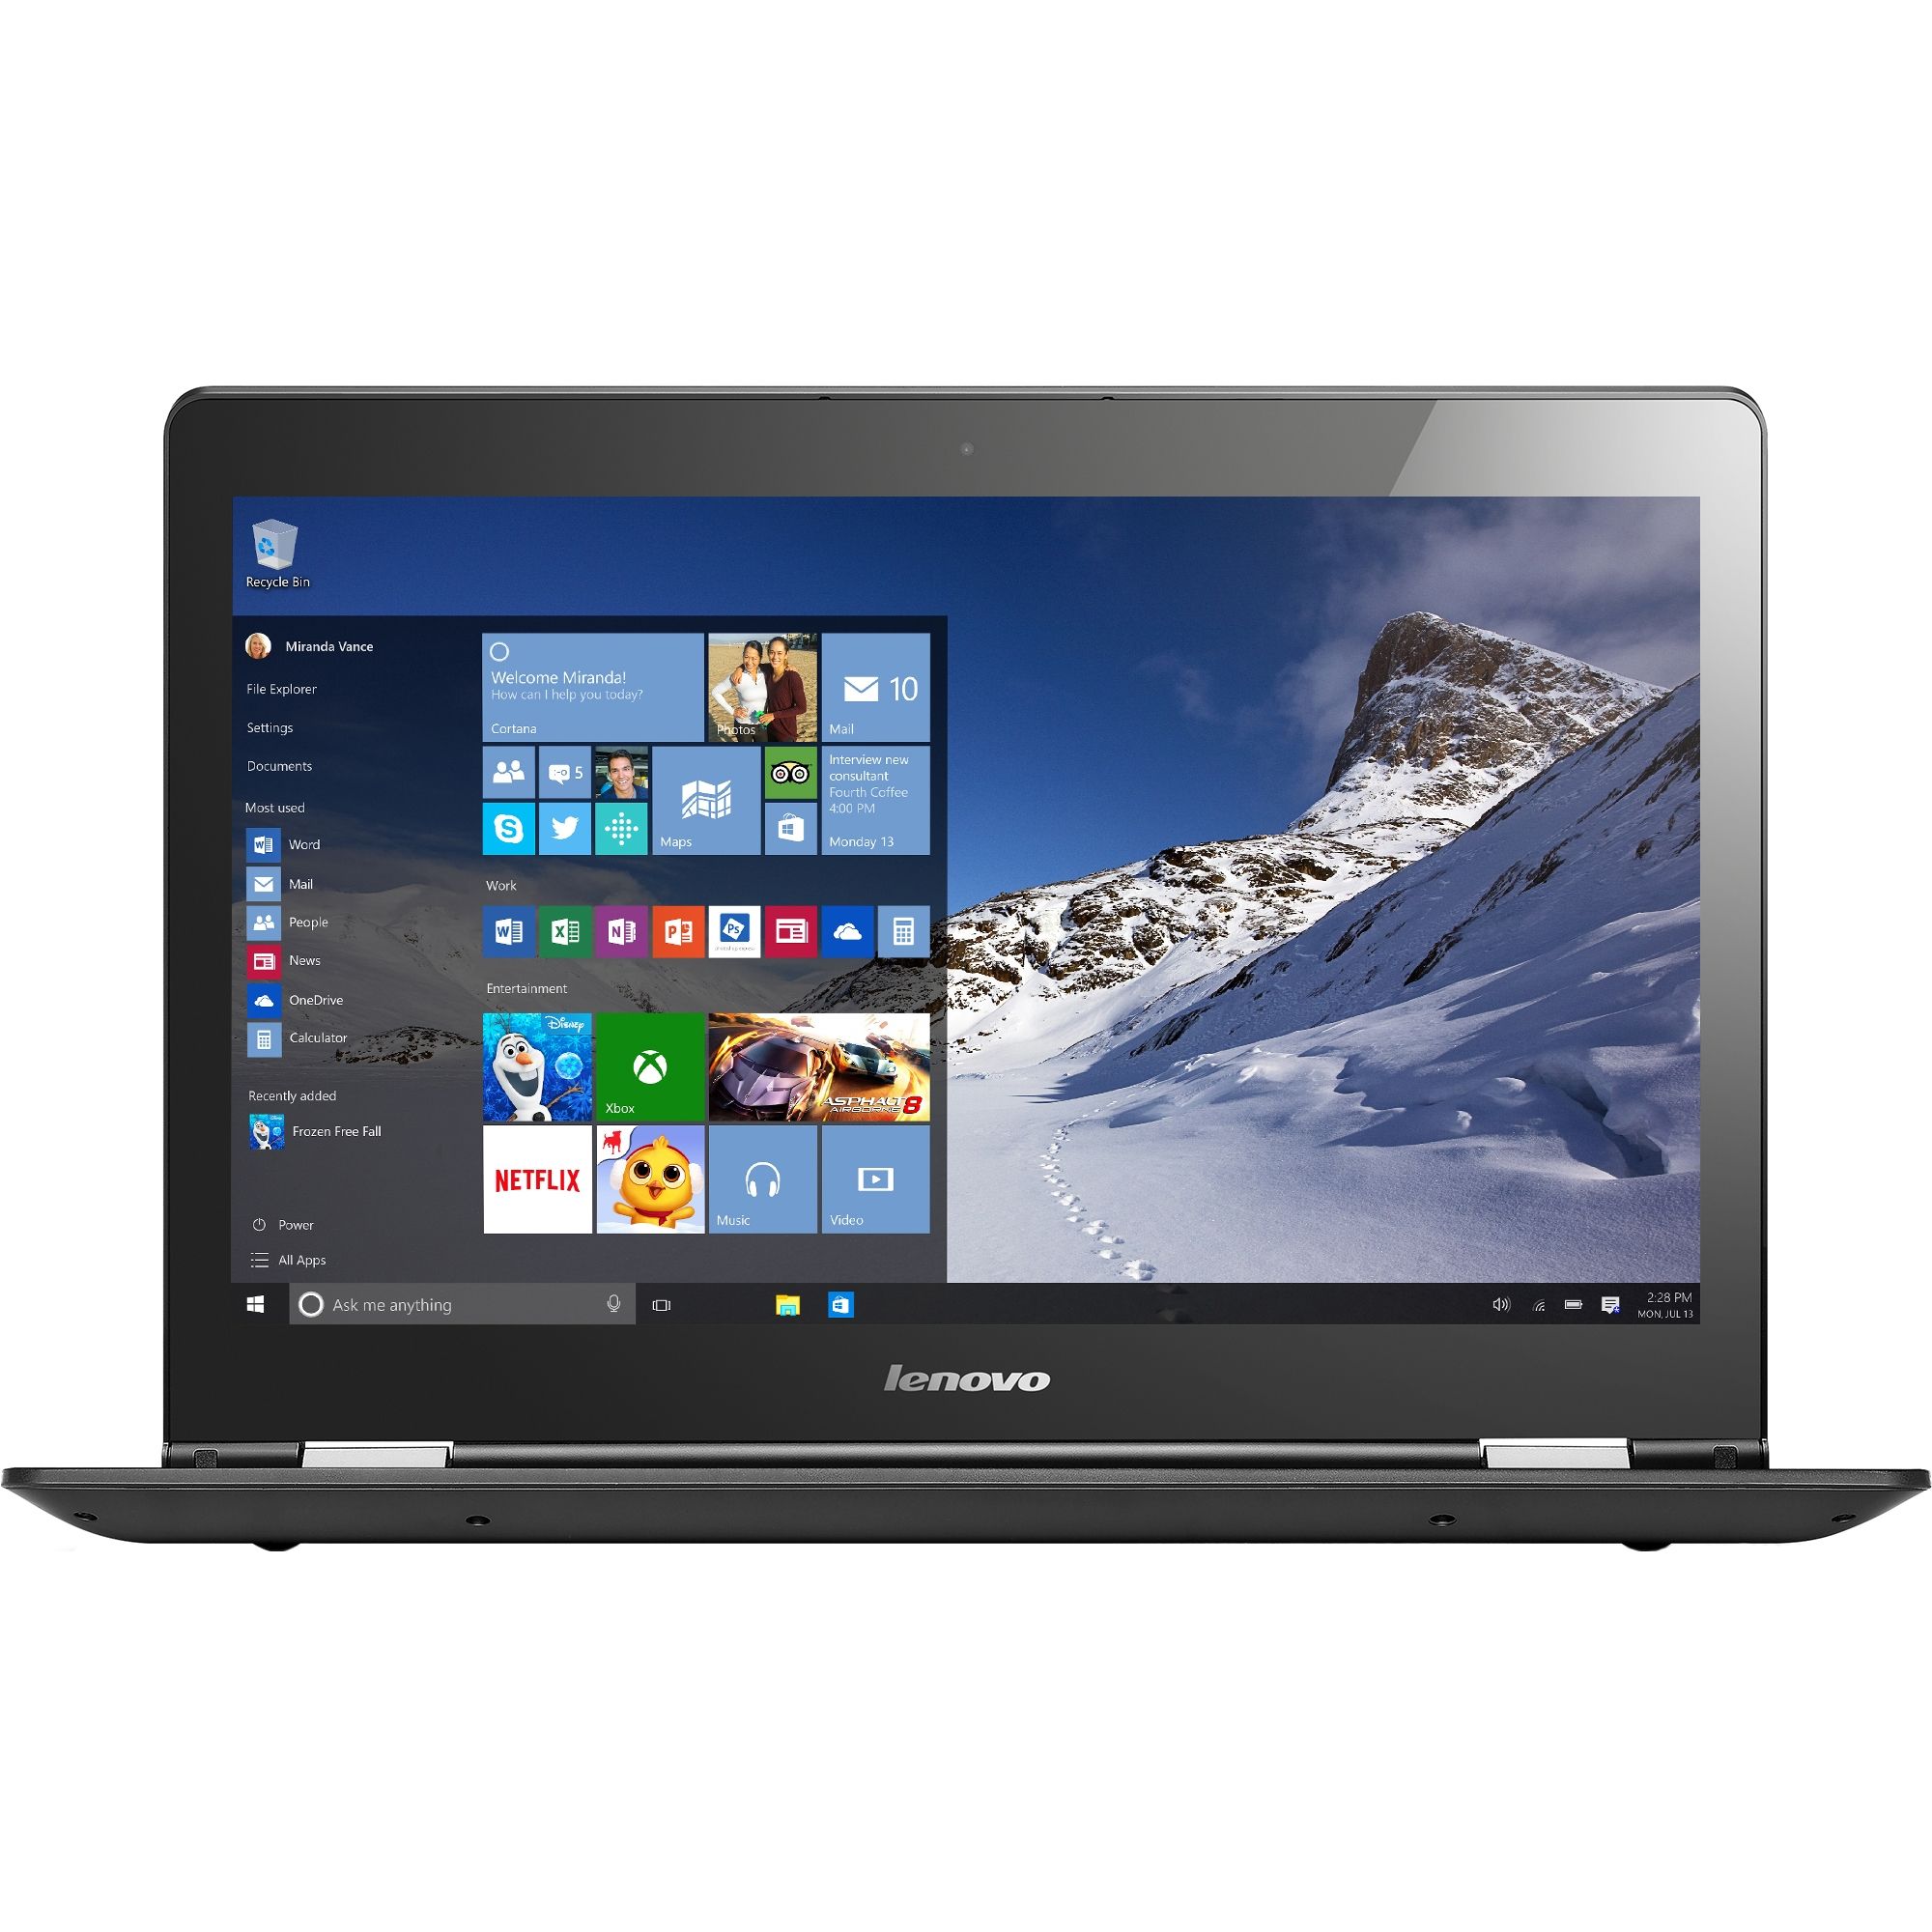  Laptop 2 in 1 Lenovo Yoga 500-15, Intel Core i7-6500U, 6GB DDR3, HDD 1TB, nVidia GeForce 920M 2GB, Windows 10 